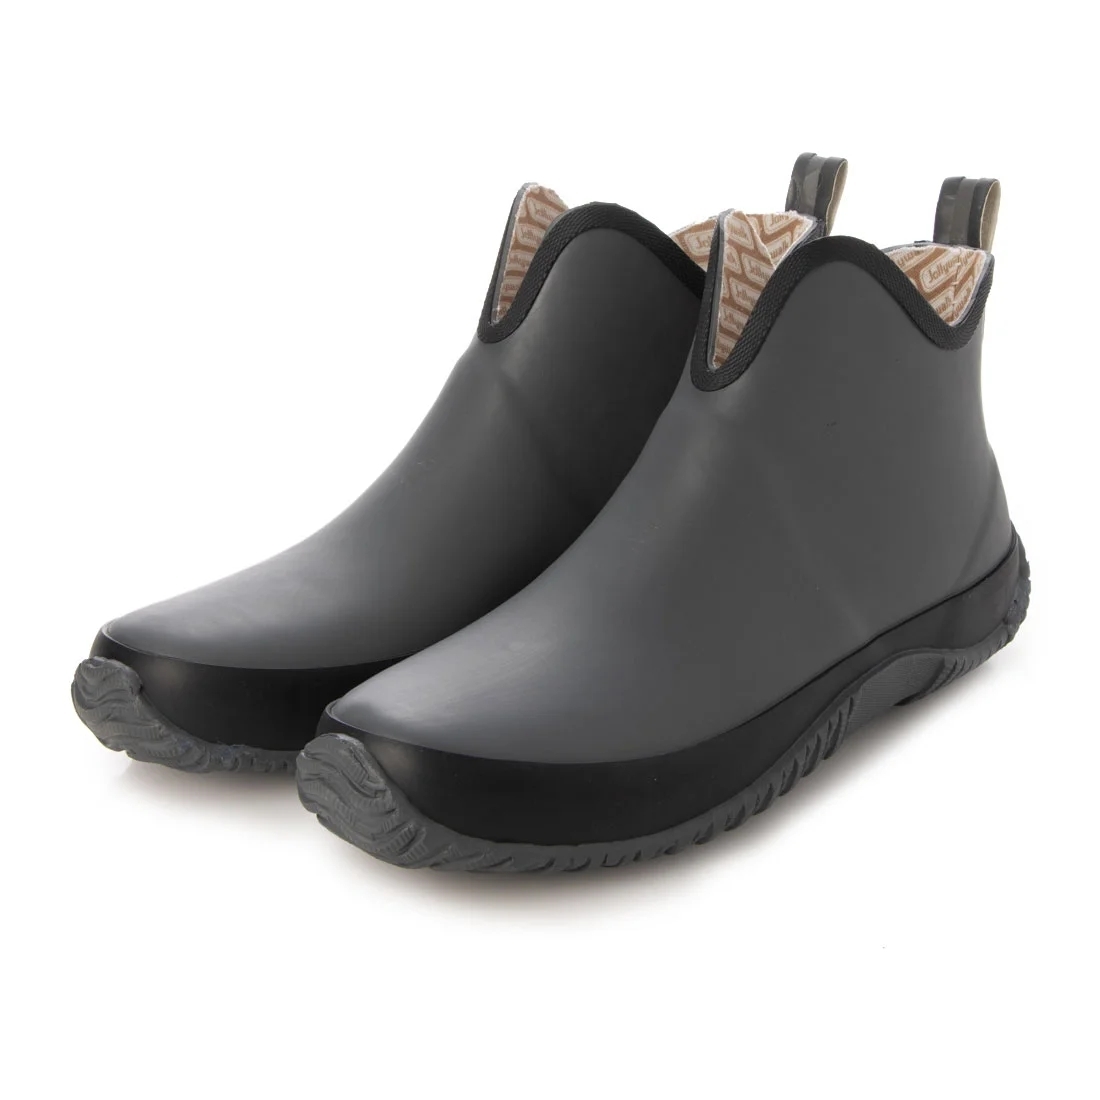 メンズレインブーツ　レインシューズ　長靴　雨靴　天然ゴム素材　新品『20089-gry-265』26.5cm　在庫一掃セール